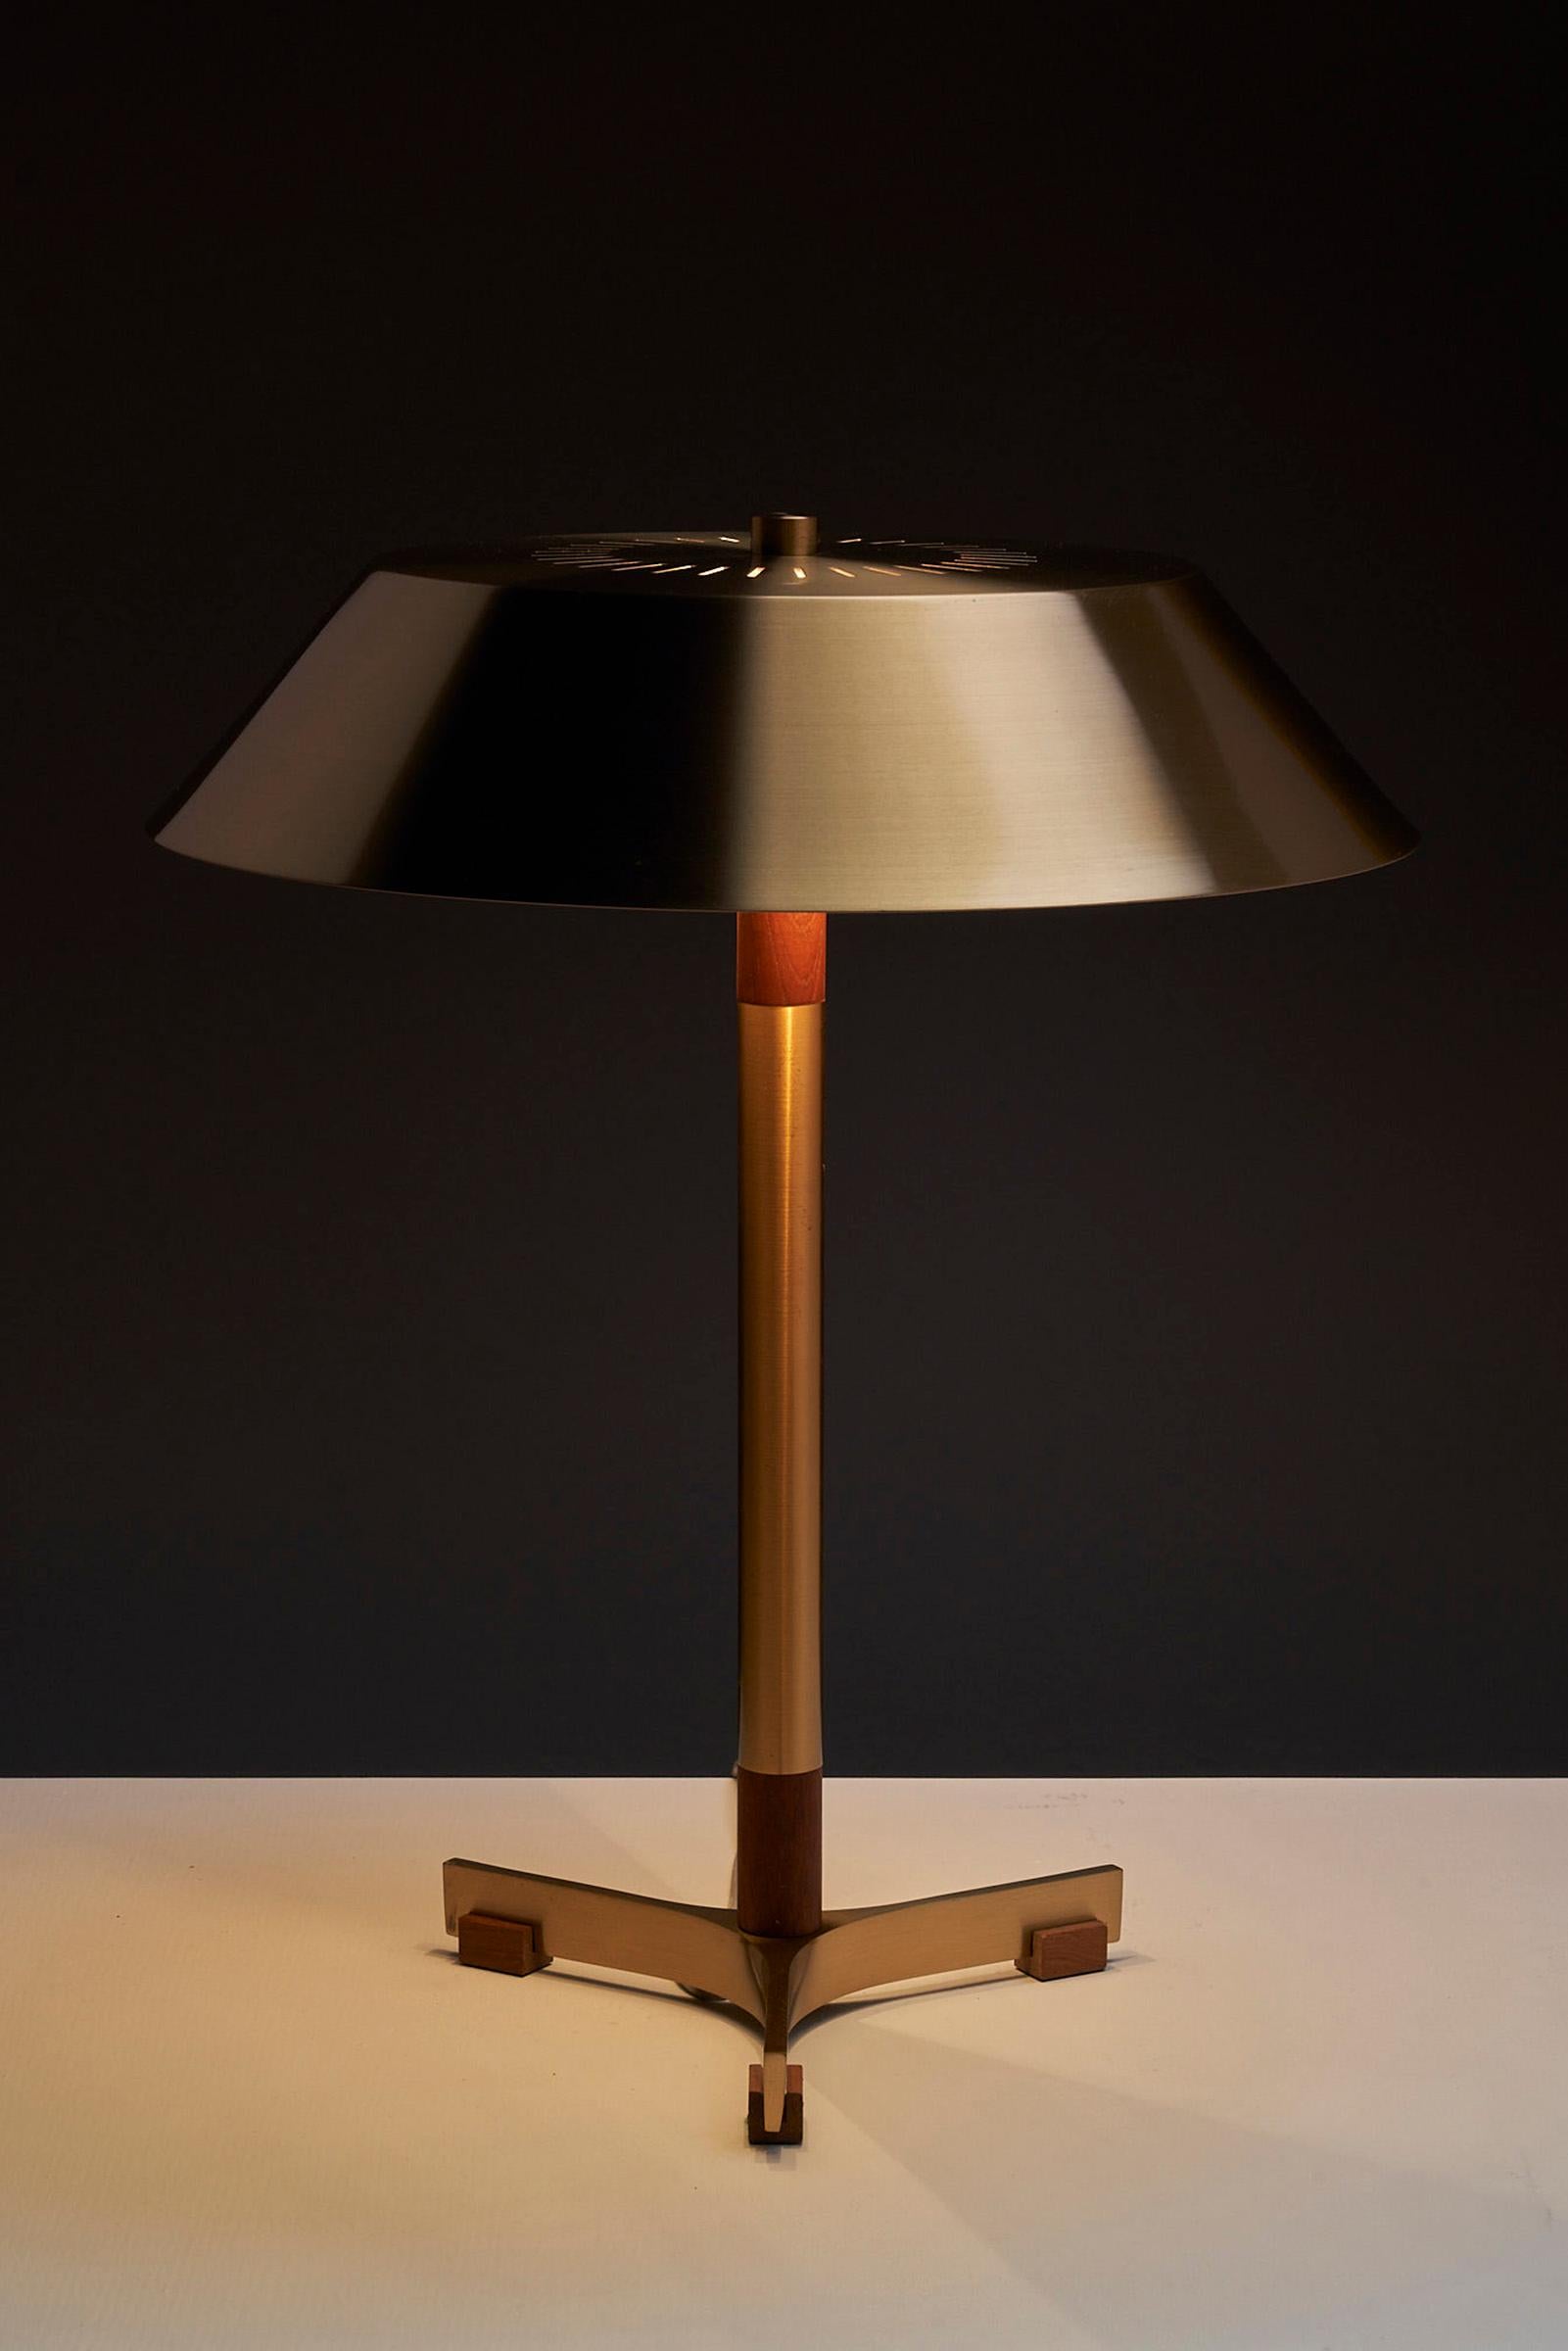 Représentant la quintessence du design danois des années 1960, la lampe 